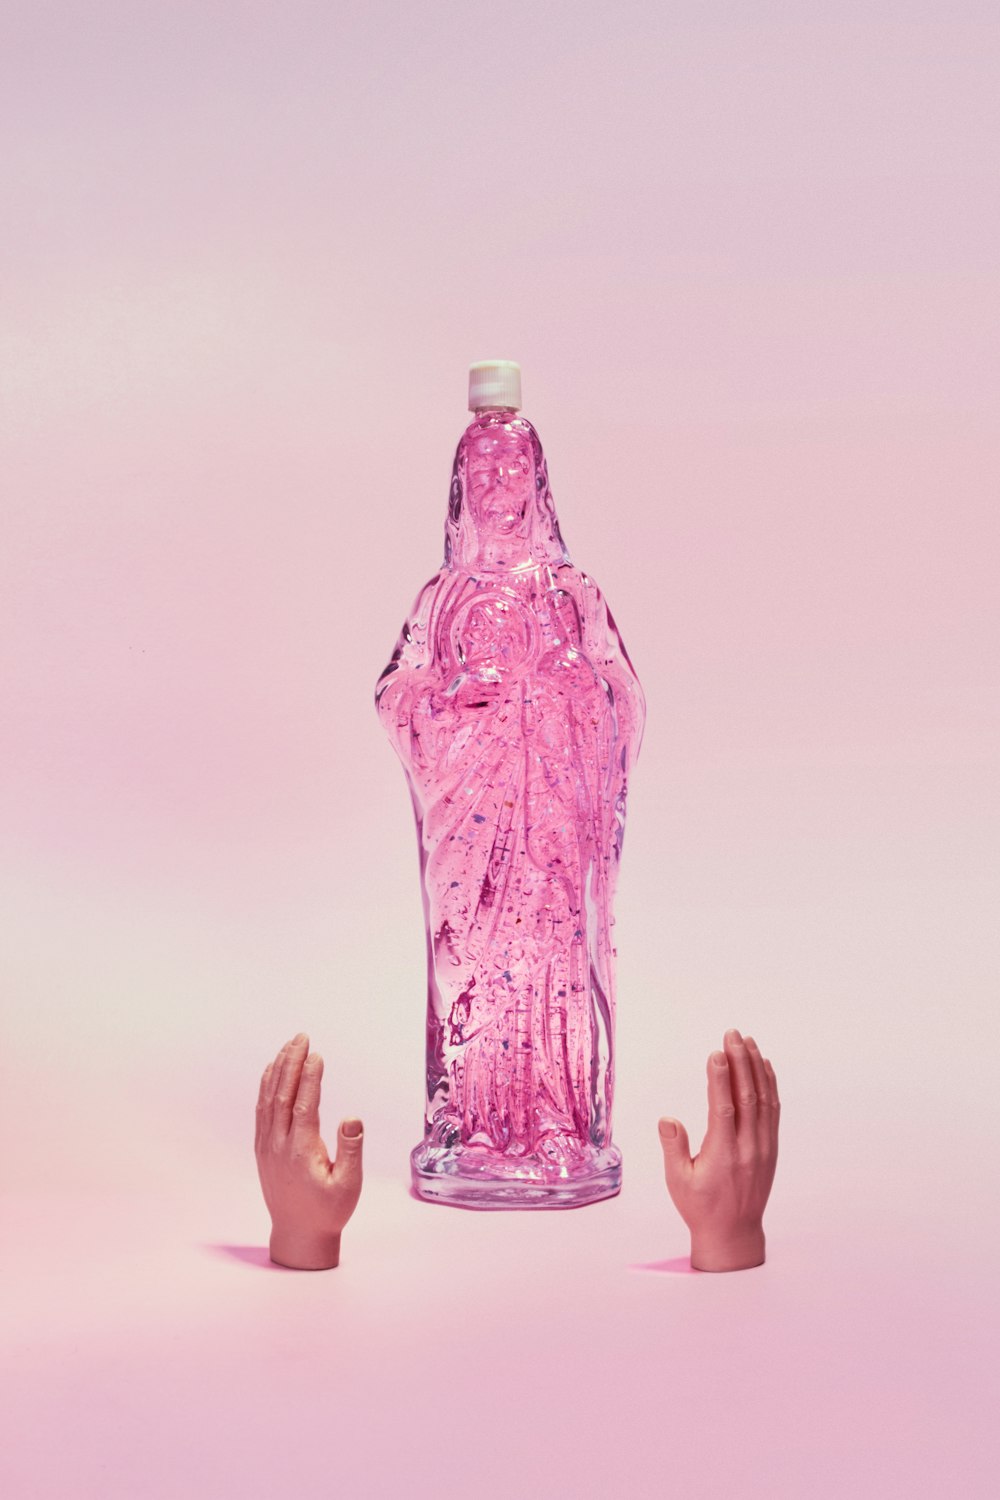 Persona sosteniendo una botella de plástico morada